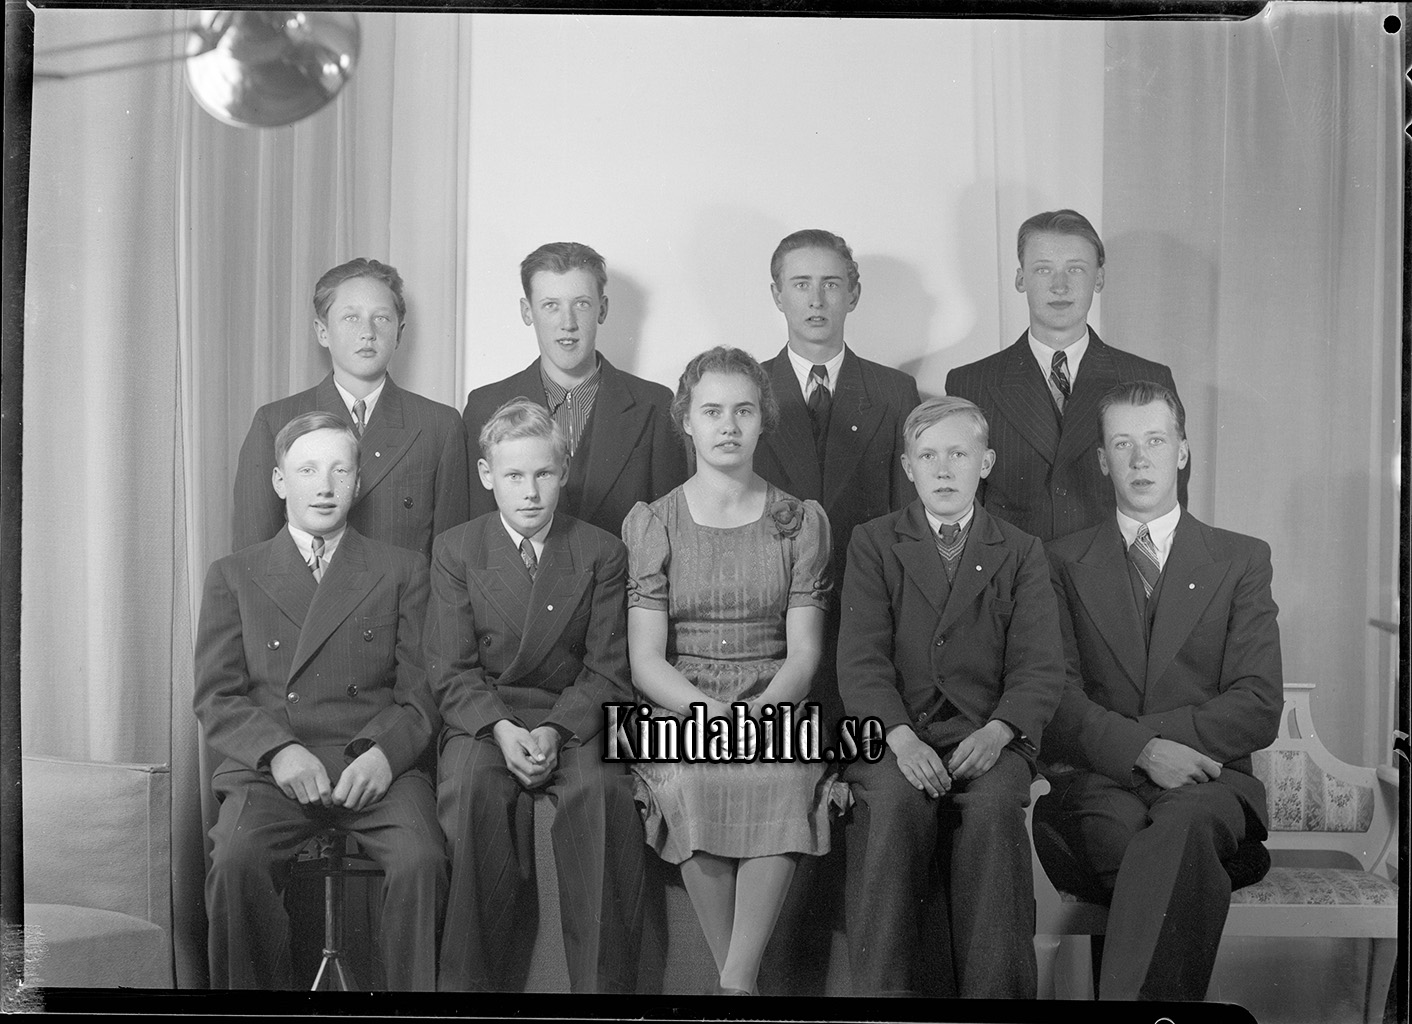 Margareta Kindvall Norra Rothult Kisa
raja
Grupporträtt med åtta män o en kvinna

Nyckelord: Kindvall Kisa